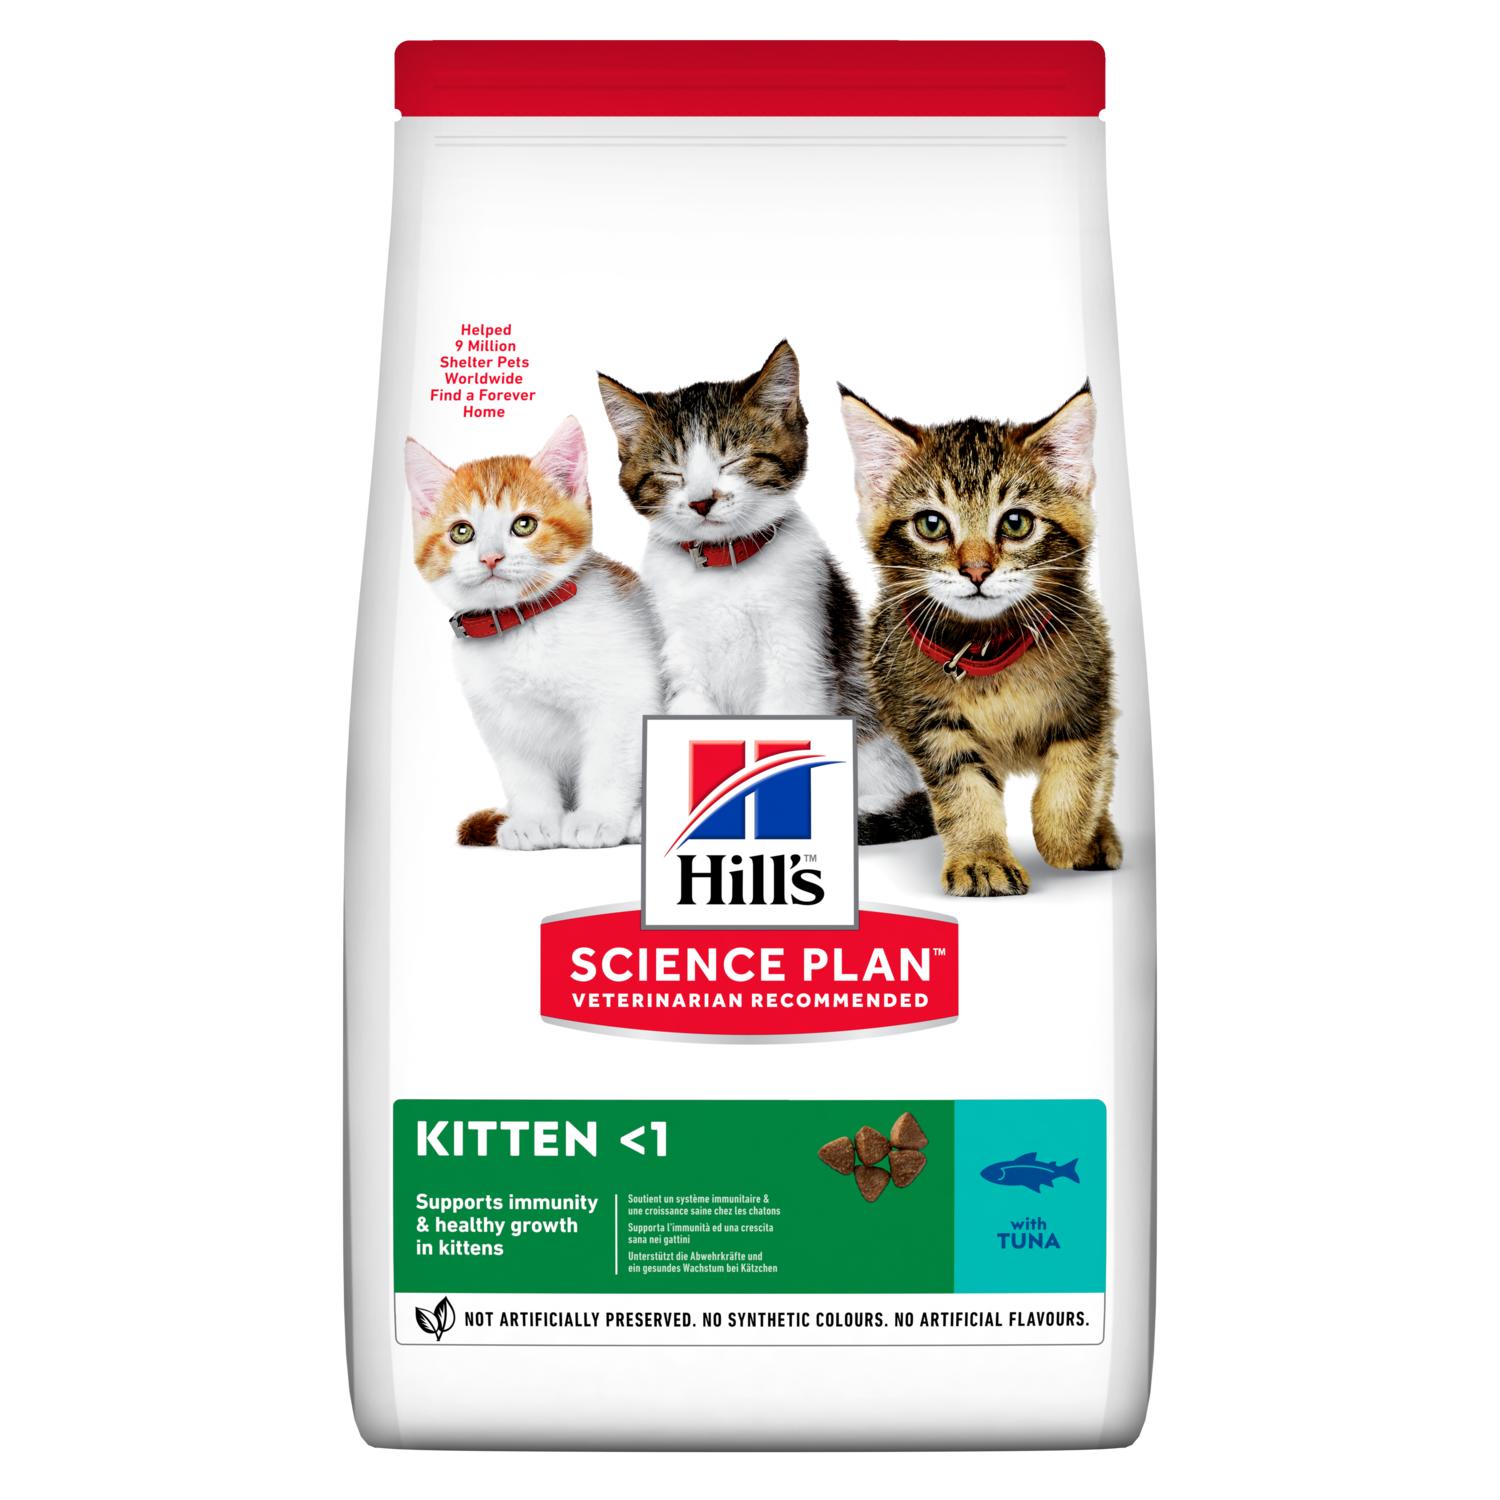 Hill's Science Plan Feline Kitten Tuna